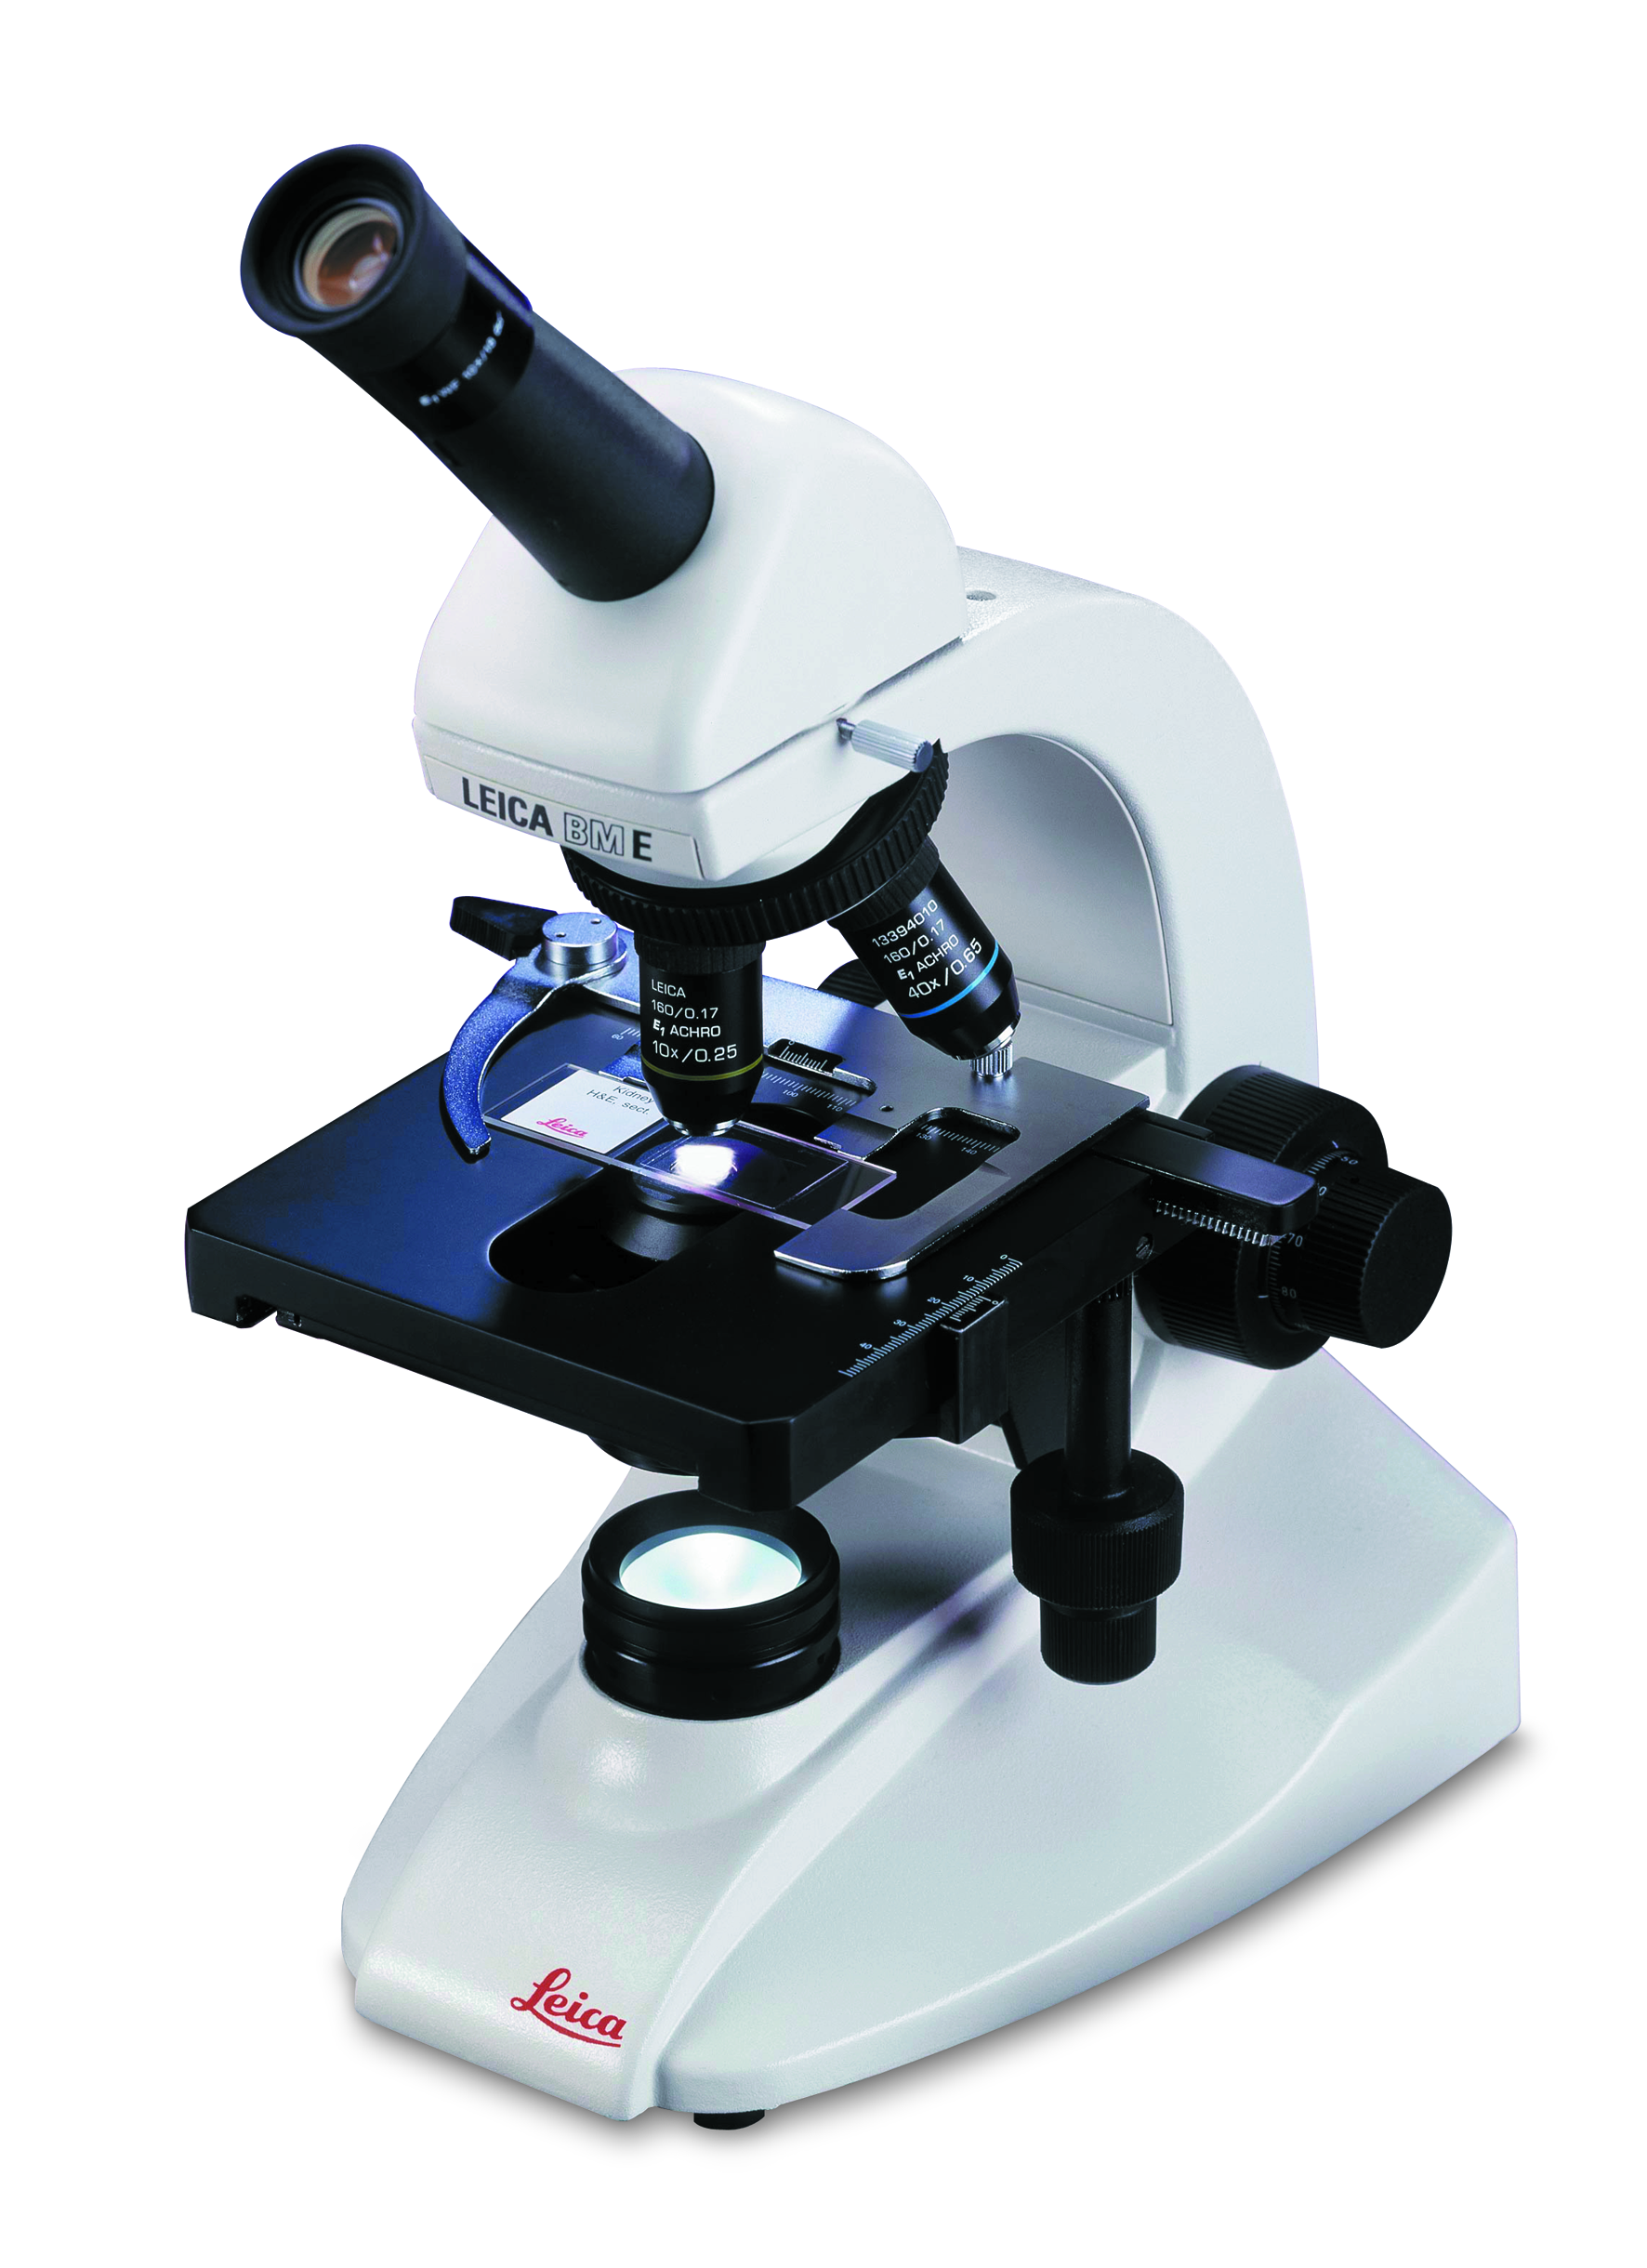 Ótica de alta qualidade e durabilidade fazem do Leica BM E o melhor microscópio educacional em sua categoria.